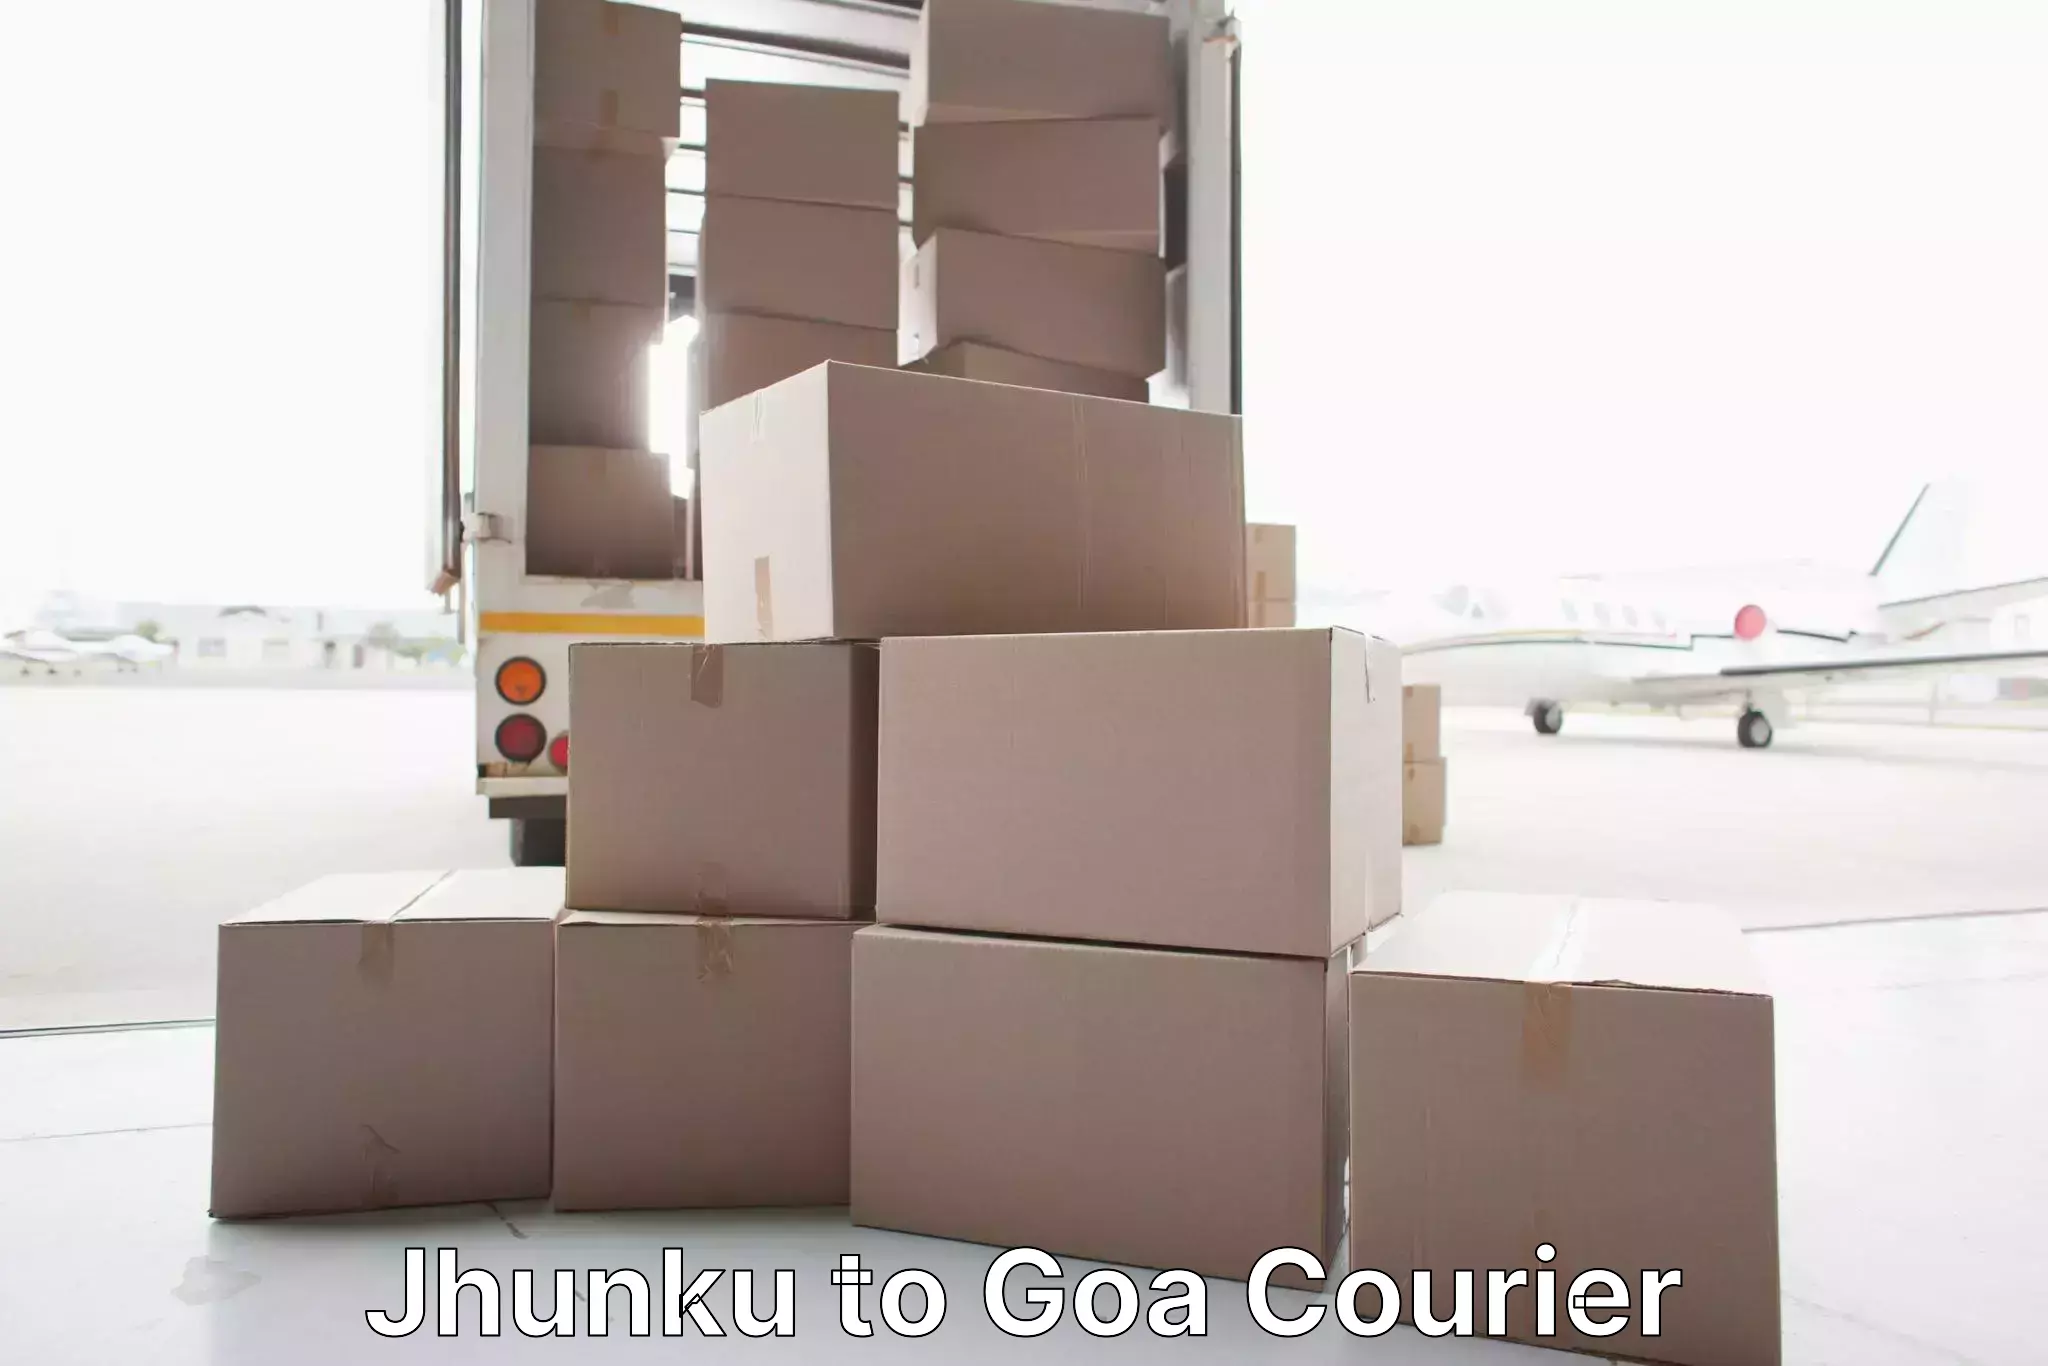 Furniture delivery service Jhunku to Vasco da Gama